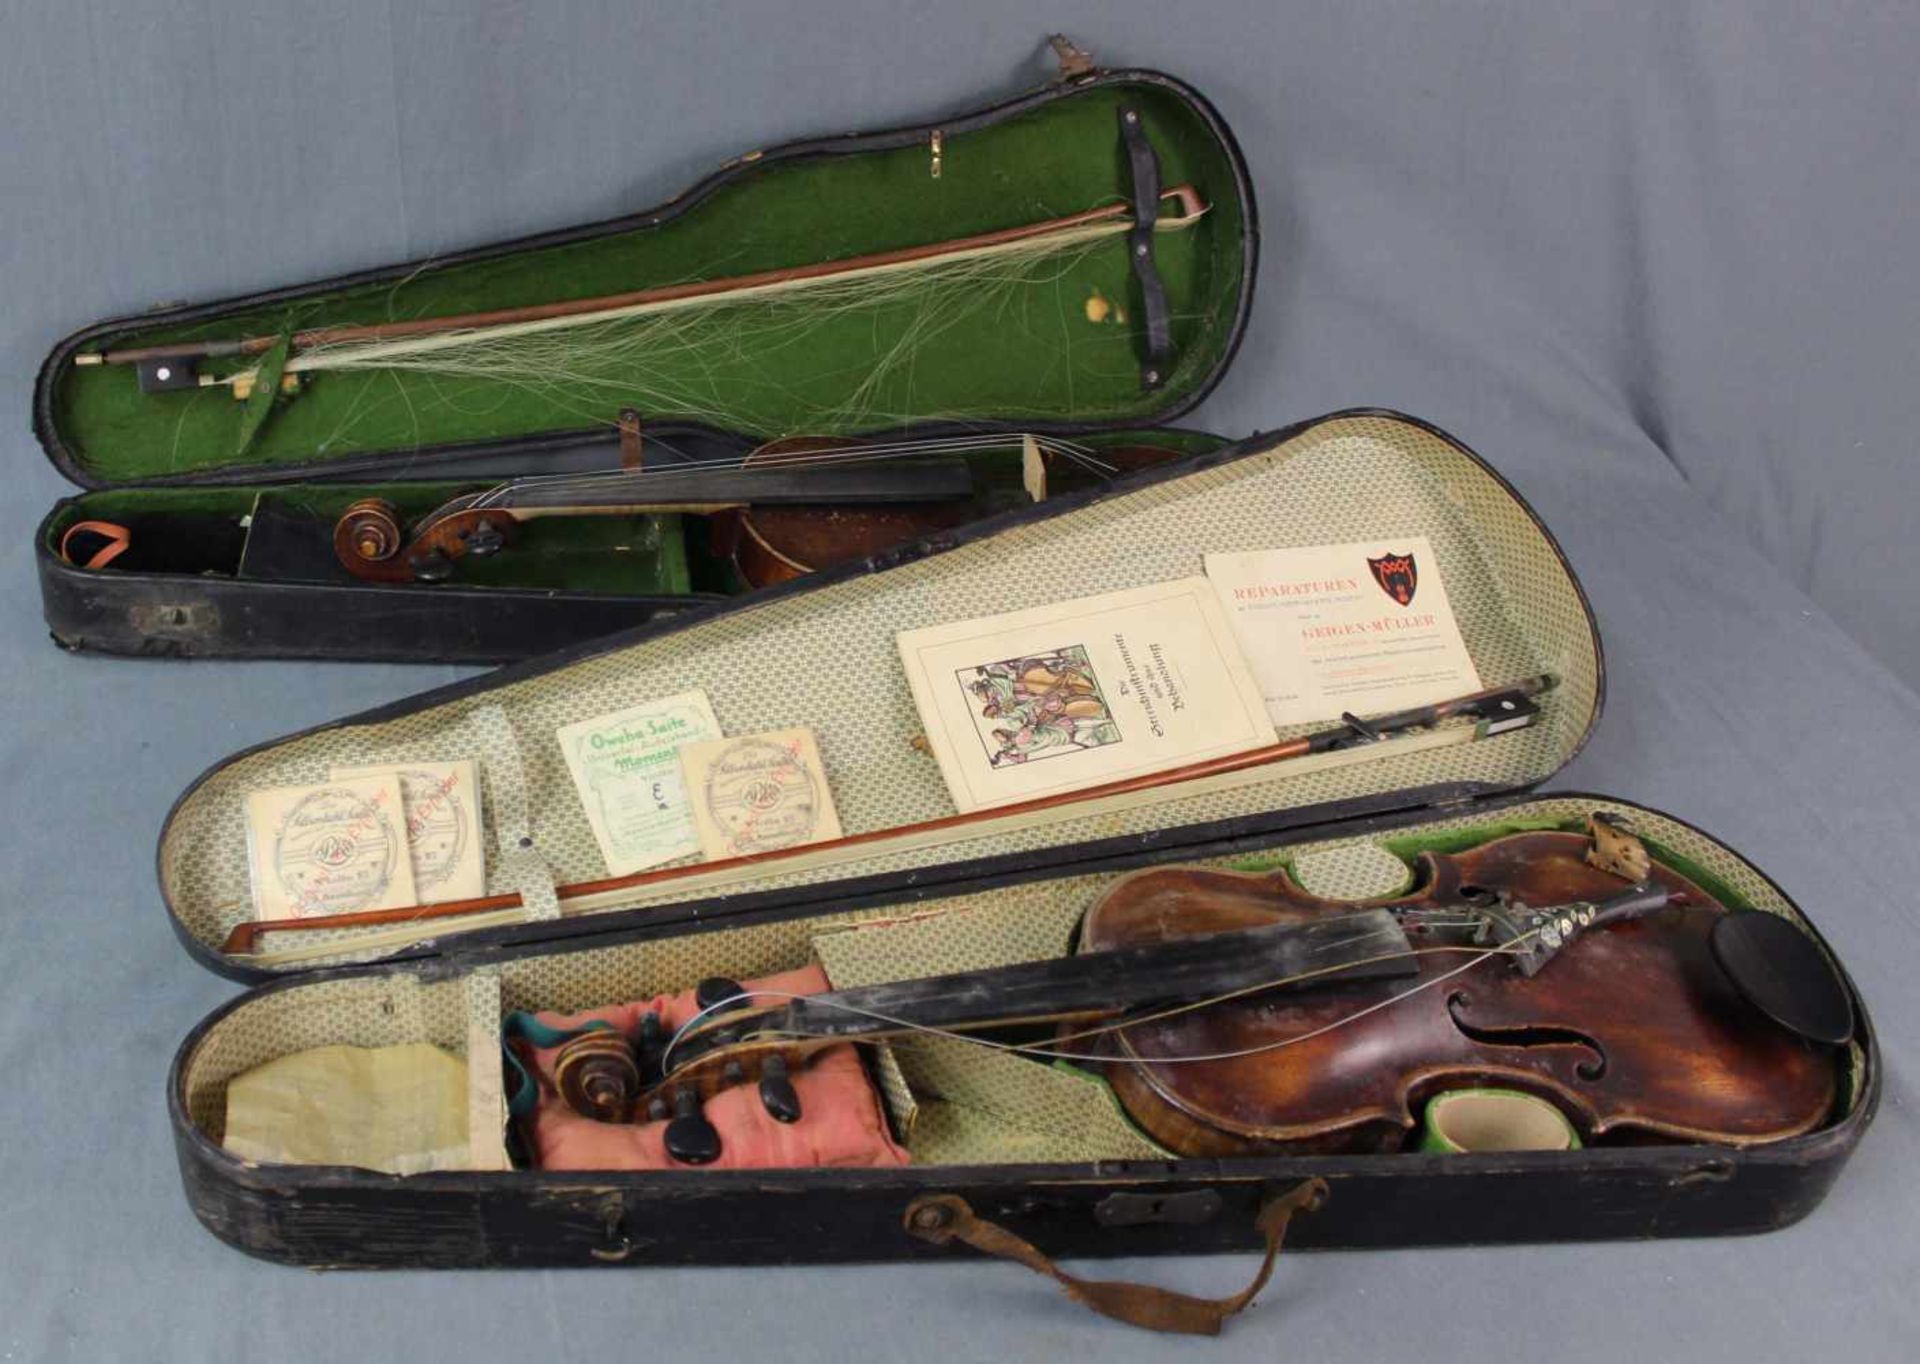 2 Violinen ( 3/4 Geigen). Jeweils in Kasten und Bogen. 2 violins (3/4 violins). Each in box and with